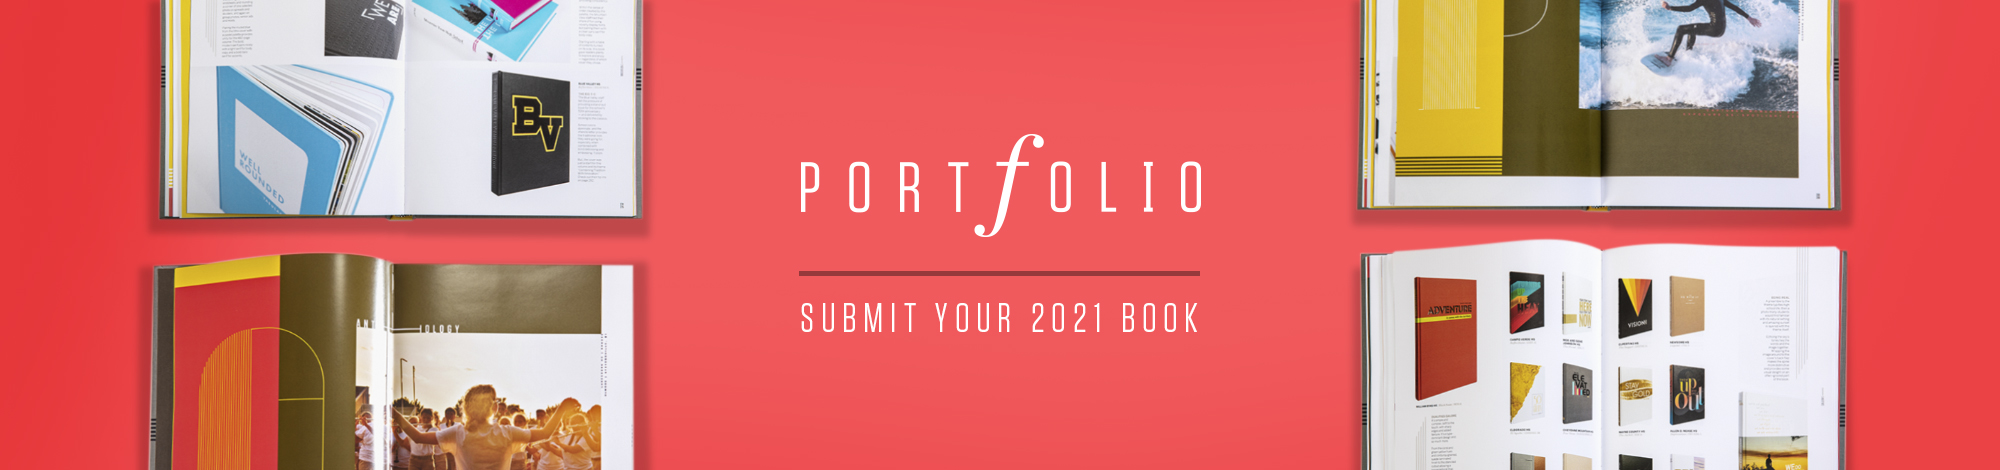 portfolio submission form 2021